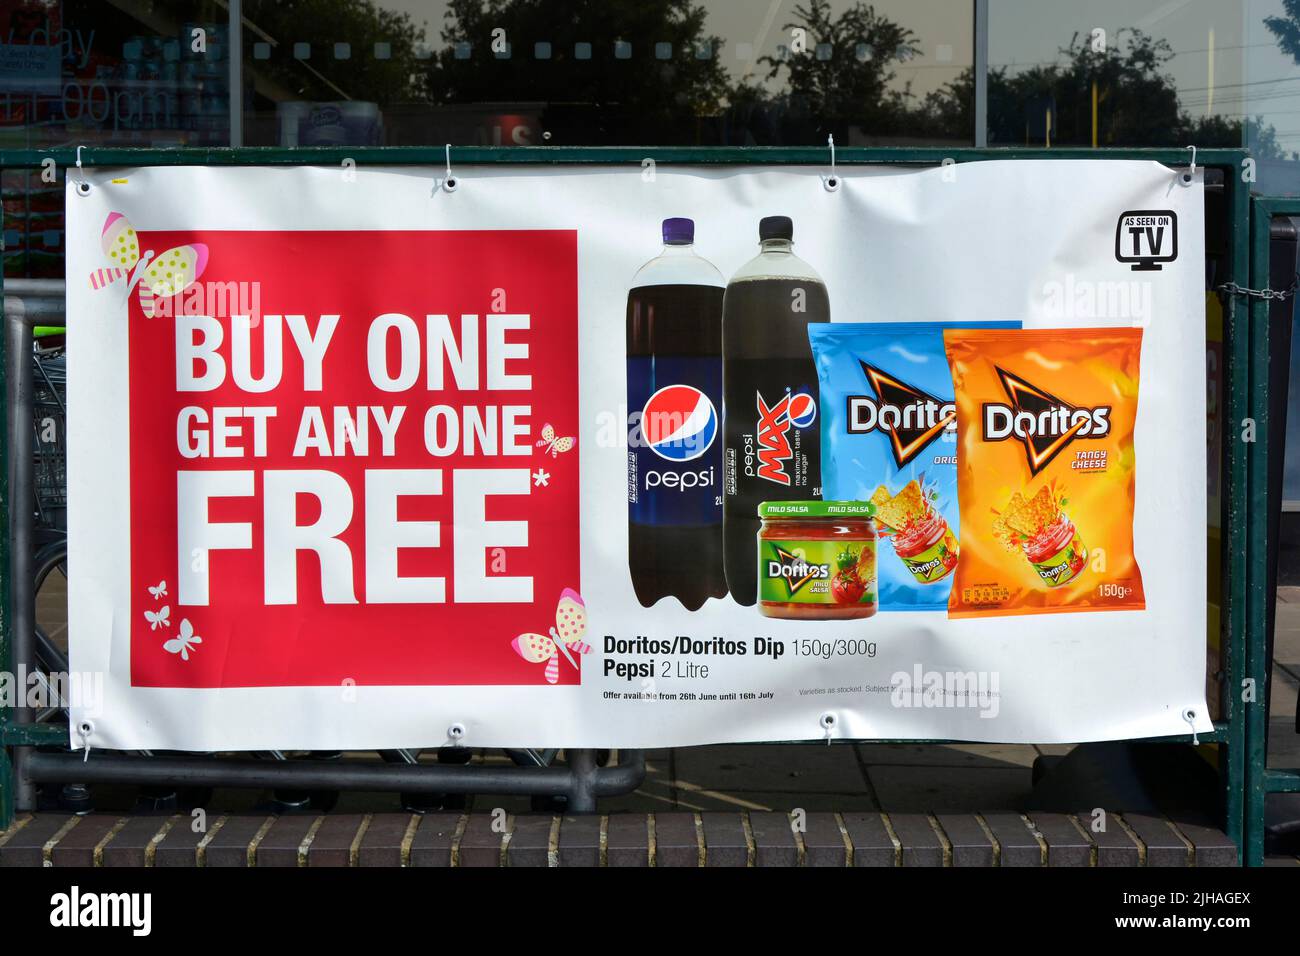 Bannière sur les rambardes à l'extérieur du supermarché local de grande rue promotion acheter un pour une offre spéciale gratuite nourriture et boissons (date de retrait des prix) Angleterre Royaume-Uni Banque D'Images